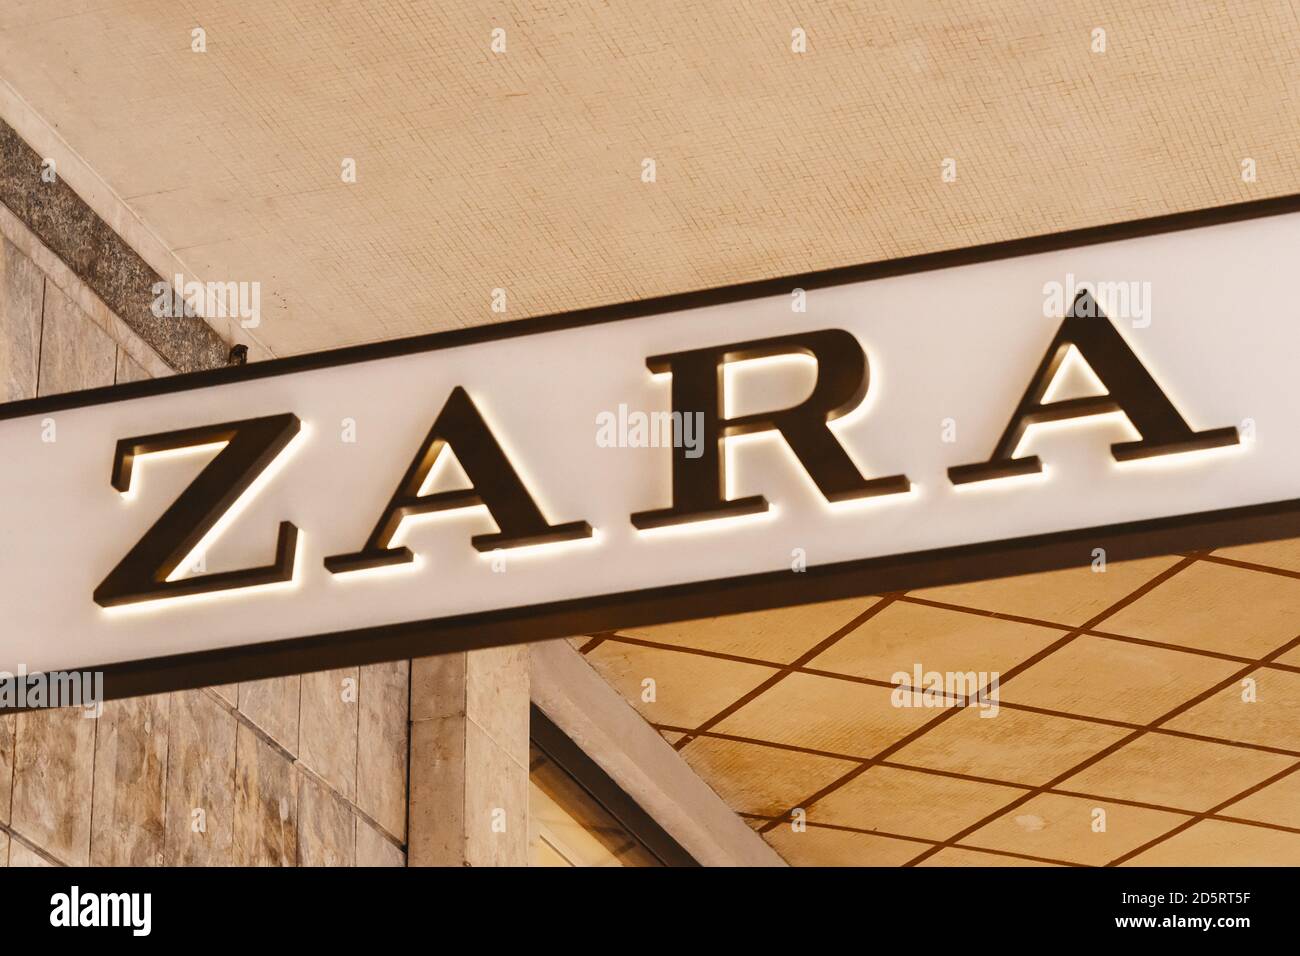 Logotipo de la Marca Zara de la tienda. Zara se especializa en moda rápida,  y los productos incluyen ropa, accesorios, traje de baño, belleza y  perfumes. Milán Fotografía de stock - Alamy